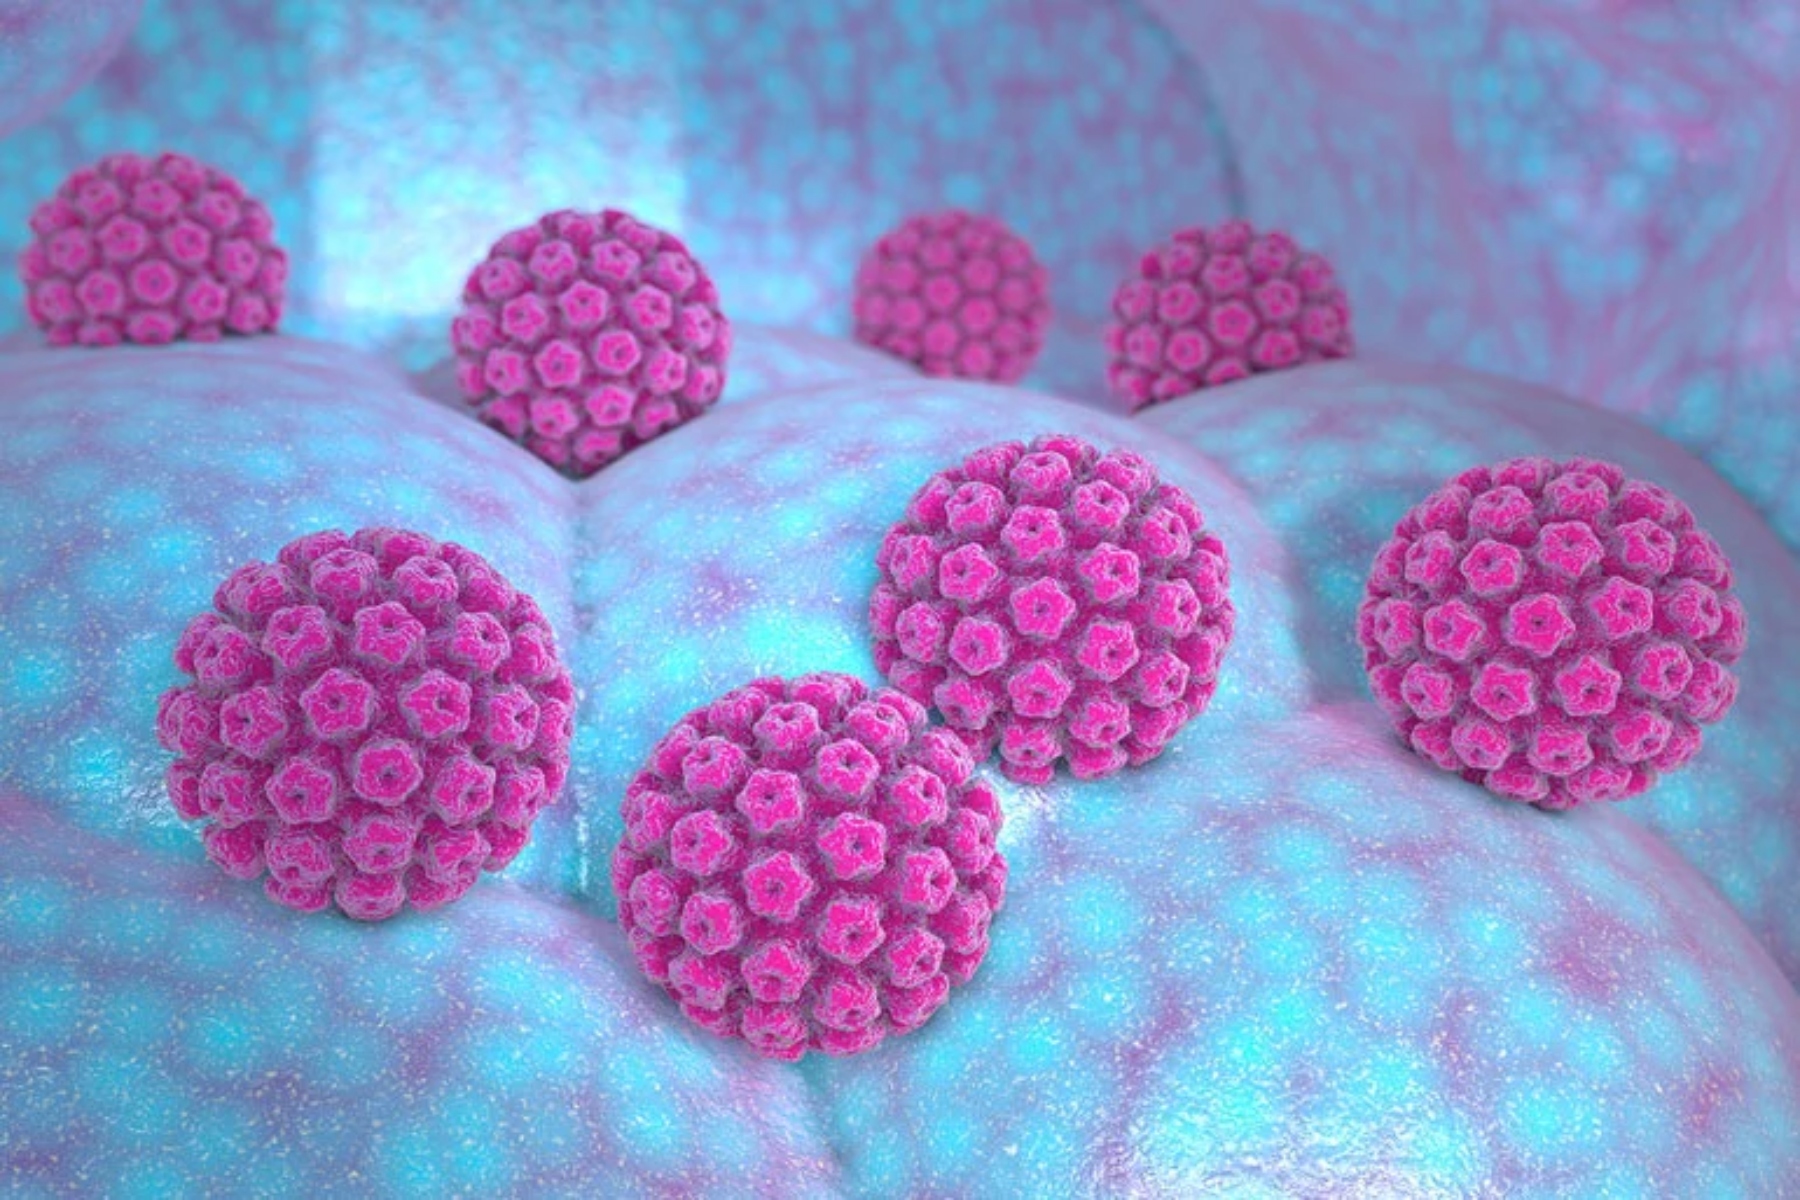 Ελληνική HPV Εταιρεία: Μπορούμε να εξαλείψουμε τον καρκίνο του τραχήλου της μήτρας έως το 2047